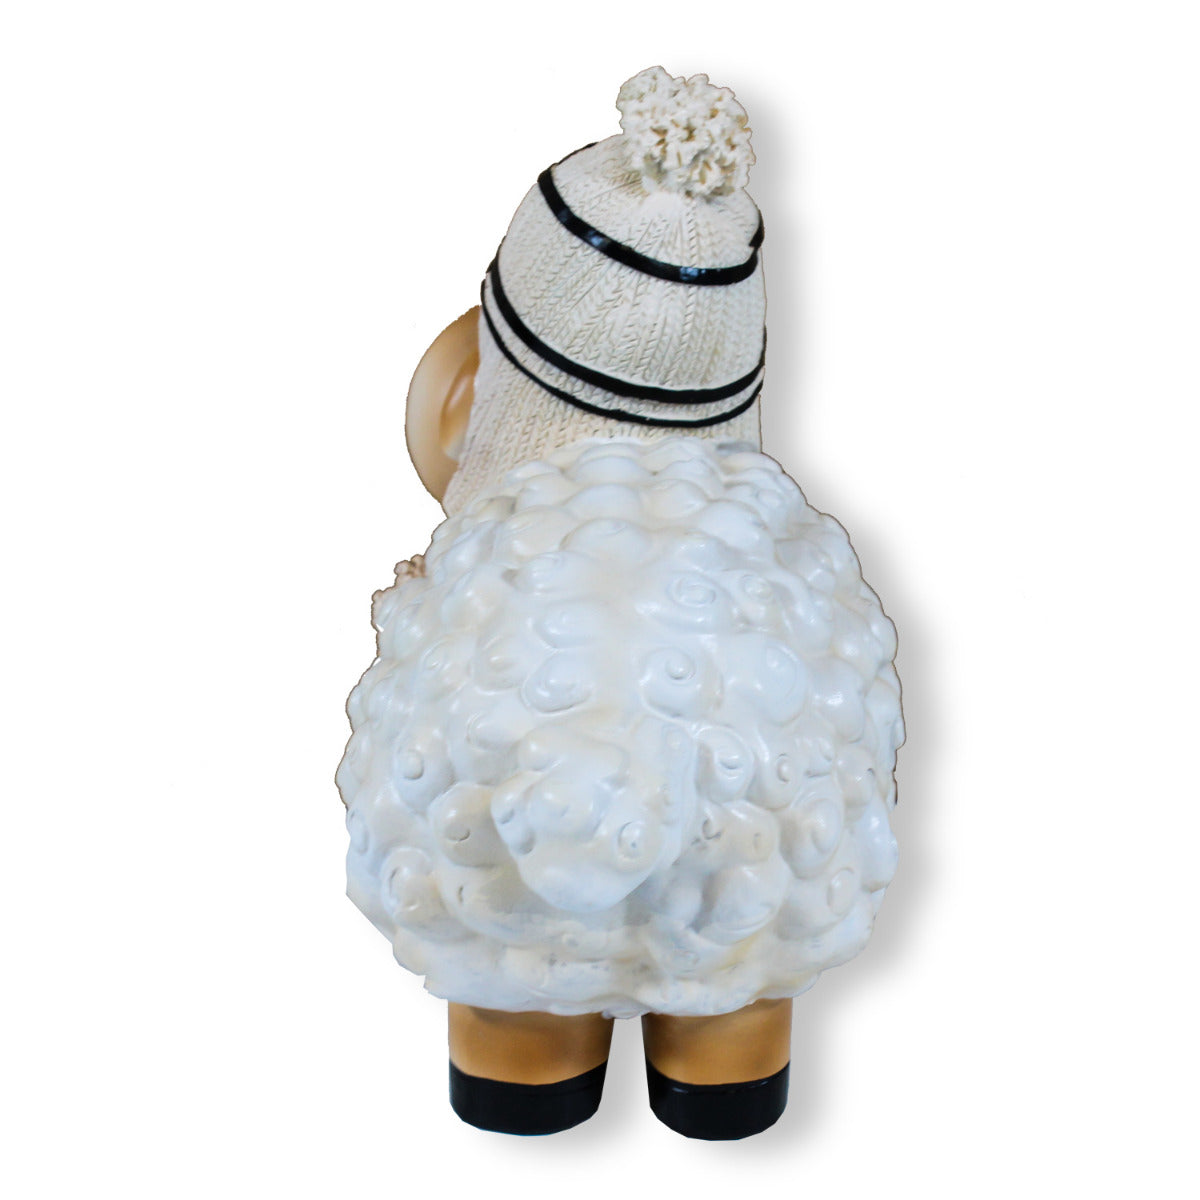 Buntes Deko Schaf weiß mit Mütze Gartenfigur Schaf Dekofigur Schaf lustige Schafe